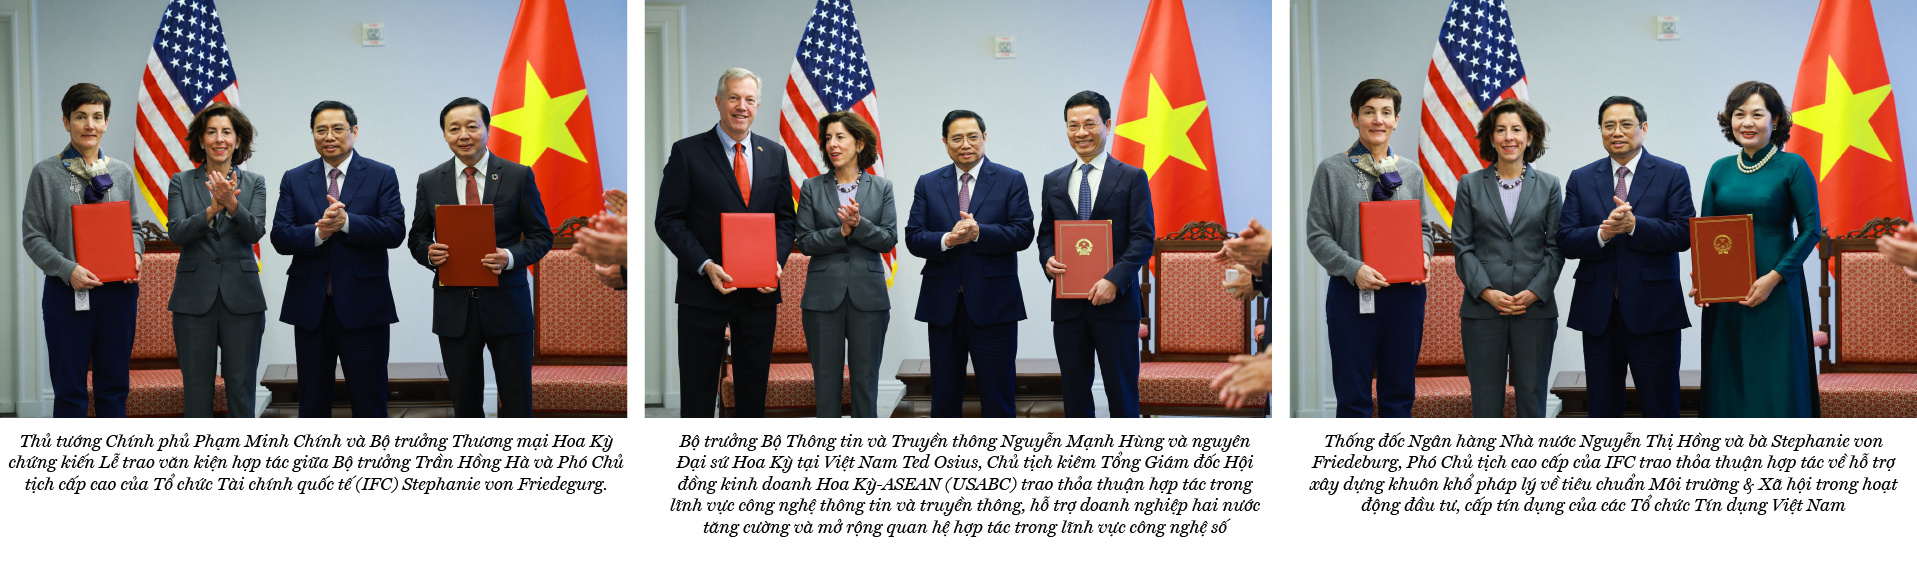 27 năm quan hệ Việt Nam – Hoa Kỳ: Từ “gác lại quá khứ” tới “đối tác toàn diện” - Ảnh 7